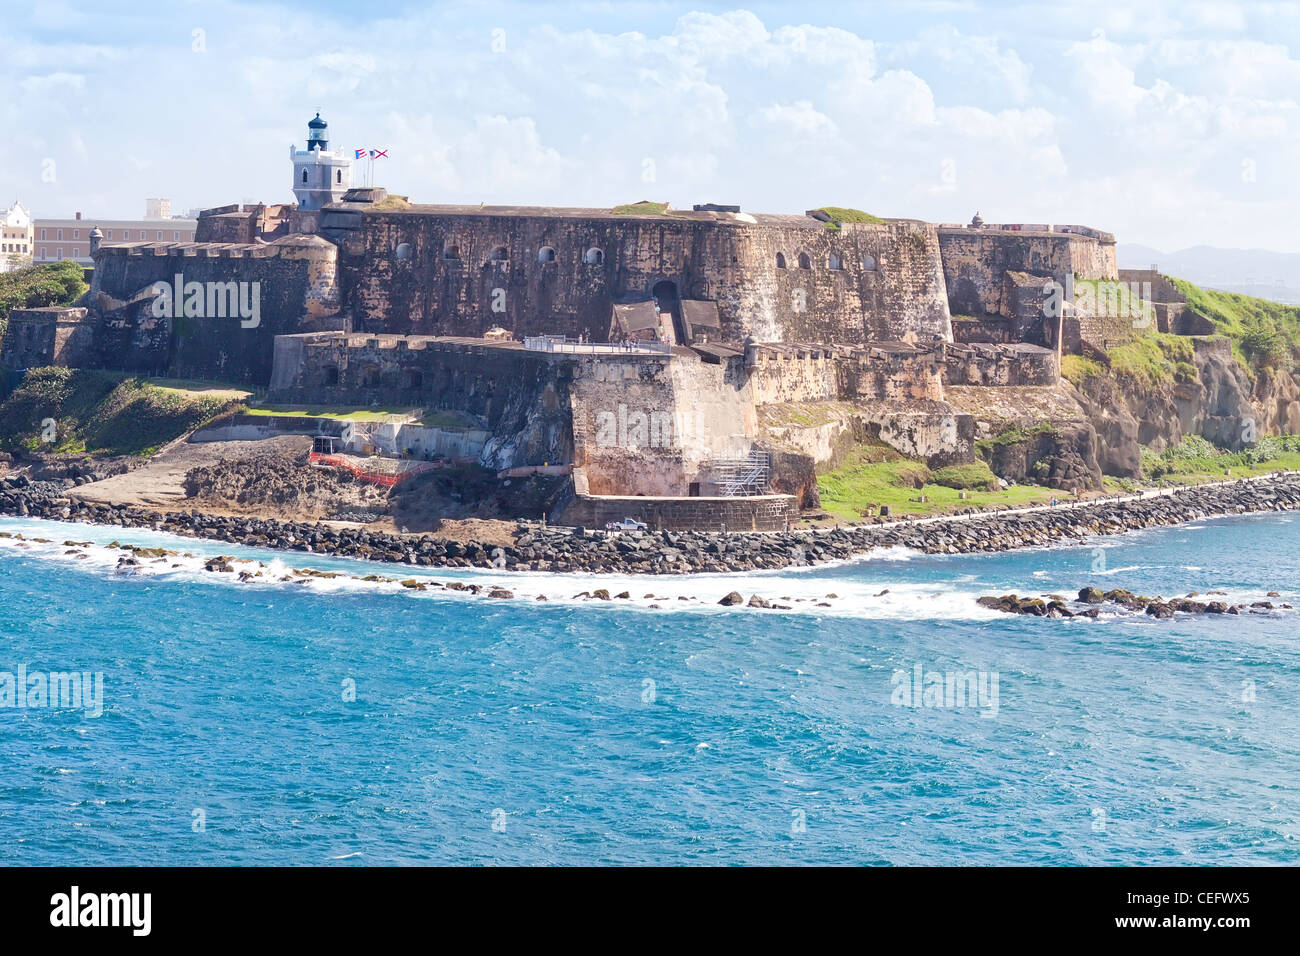 El Morro Castle in San Juan, Puerto Rico Stock Photo